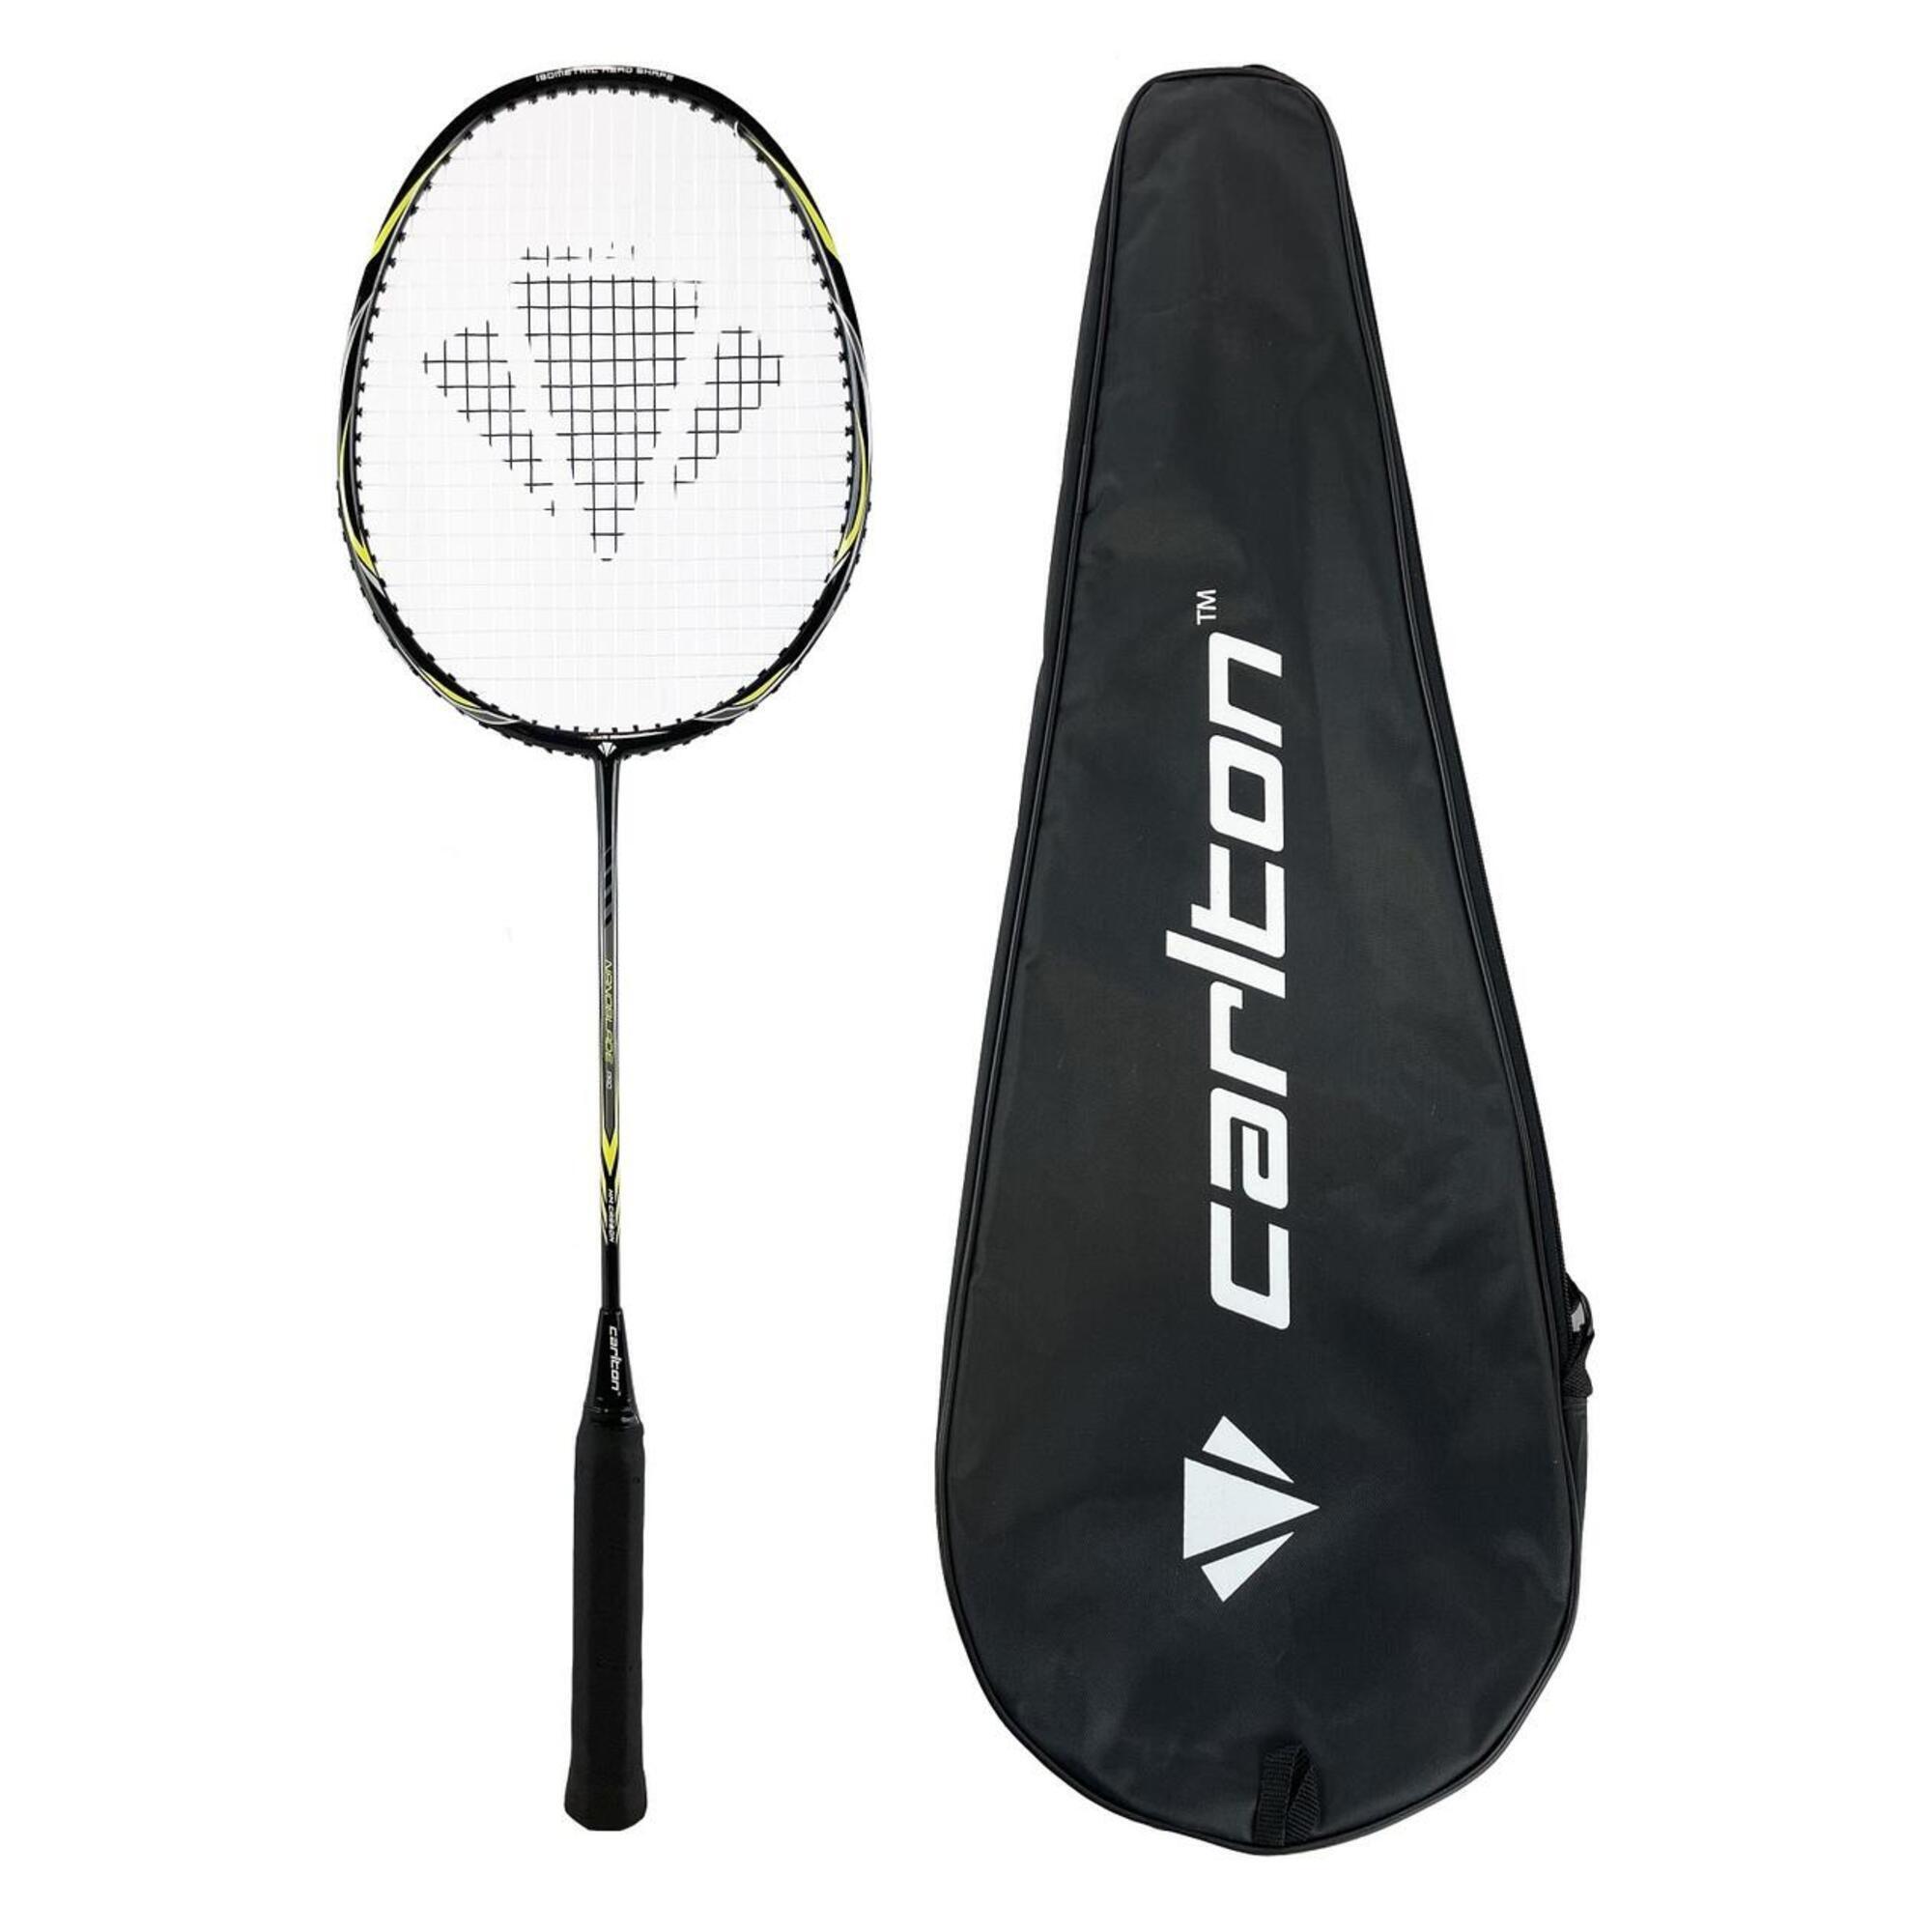 CARLTON Carlton Nanoblade Pro Badminton Racket + Cover